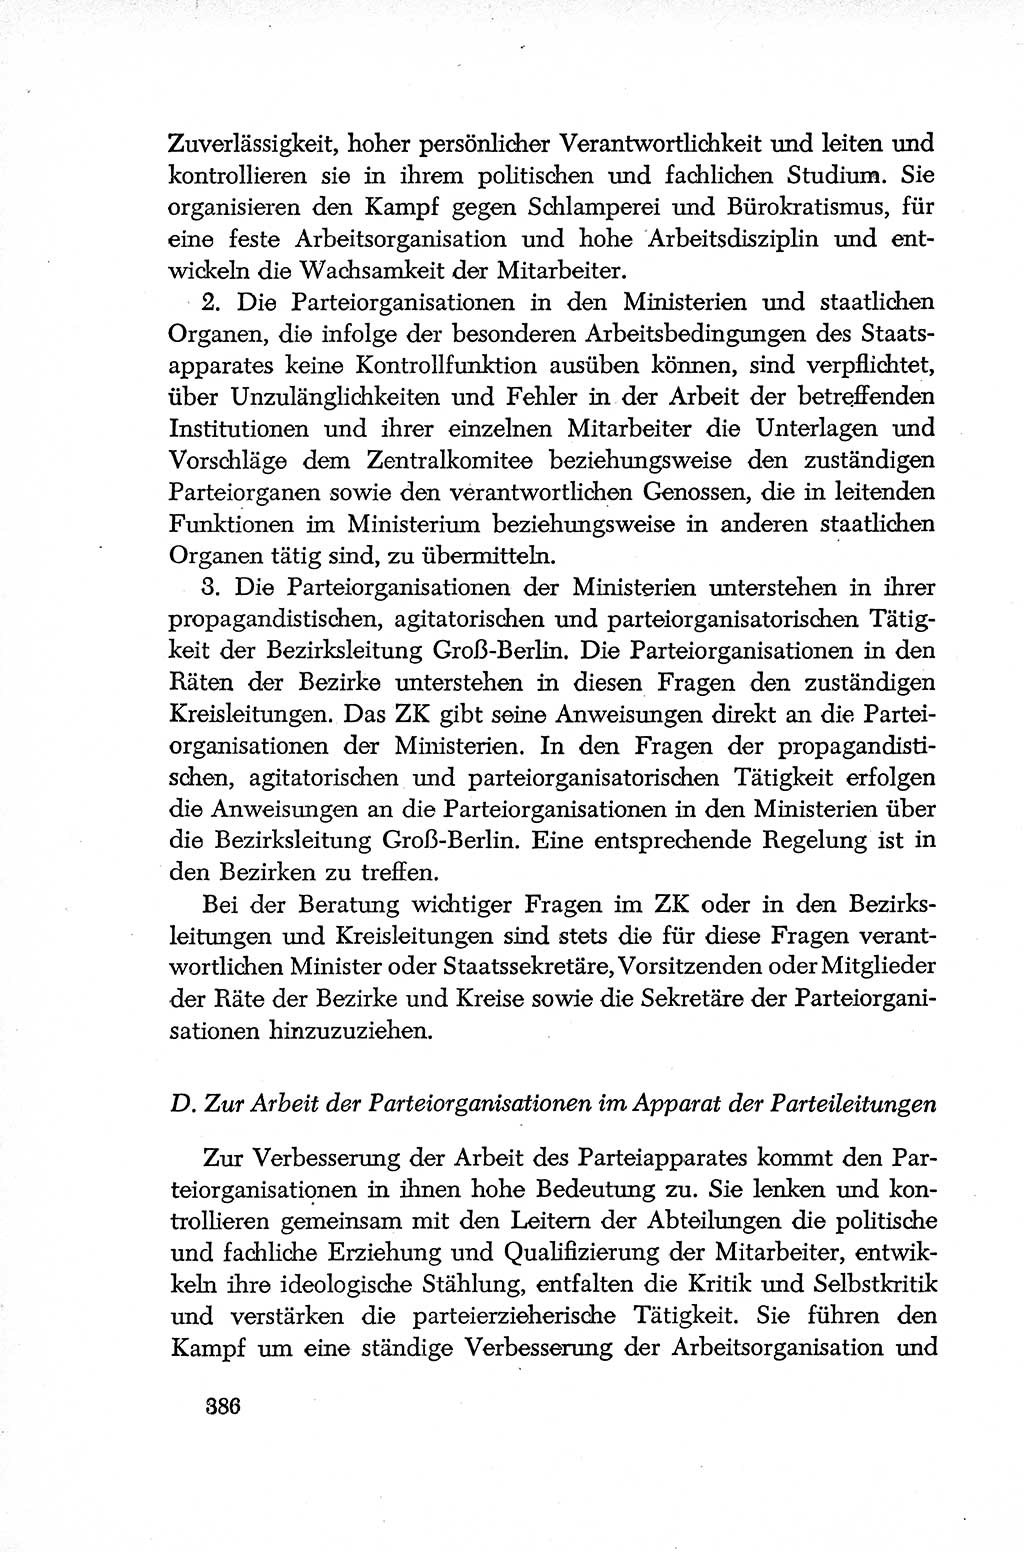 Dokumente der Sozialistischen Einheitspartei Deutschlands (SED) [Deutsche Demokratische Republik (DDR)] 1952-1953, Seite 386 (Dok. SED DDR 1952-1953, S. 386)